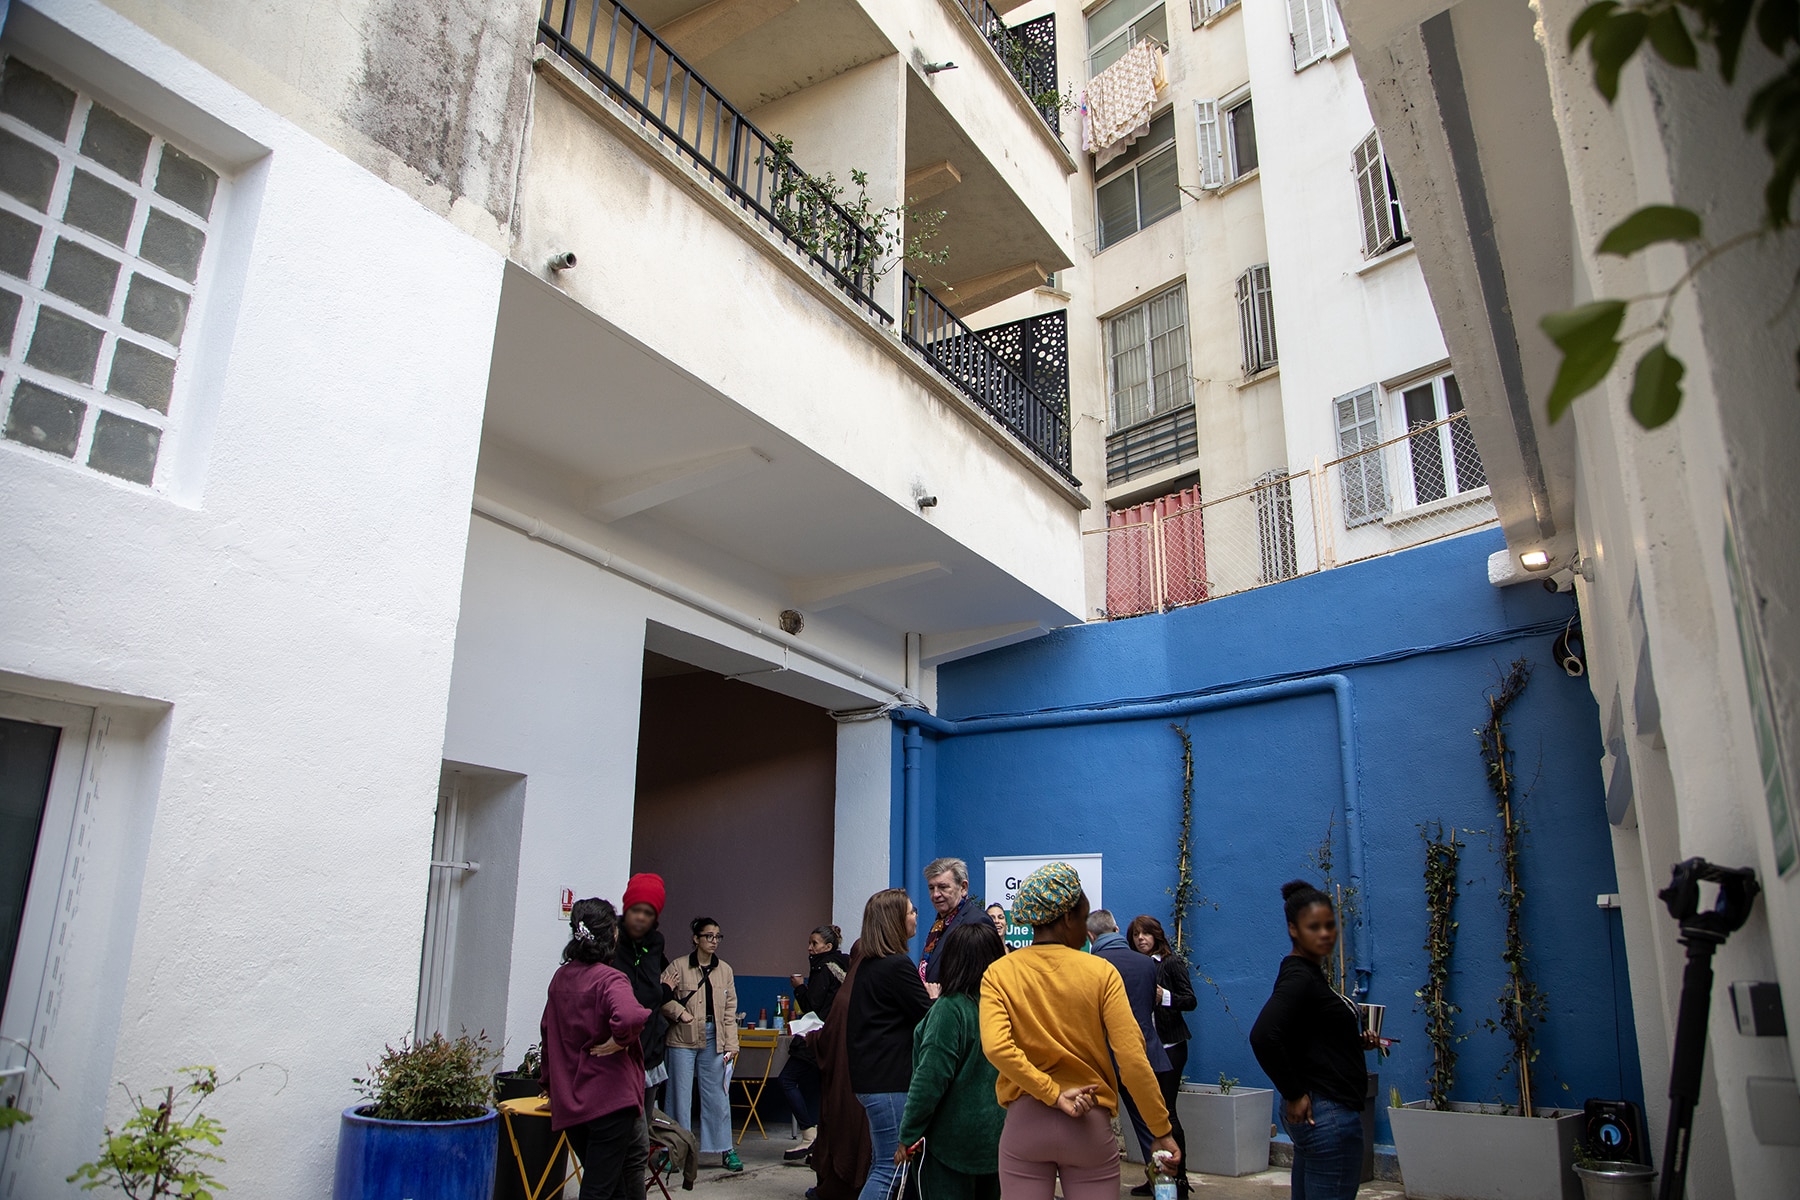 hébergement, Un nouveau centre d&rsquo;hébergement d&rsquo;urgence dédié aux femmes ouvre à Marseille, Made in Marseille